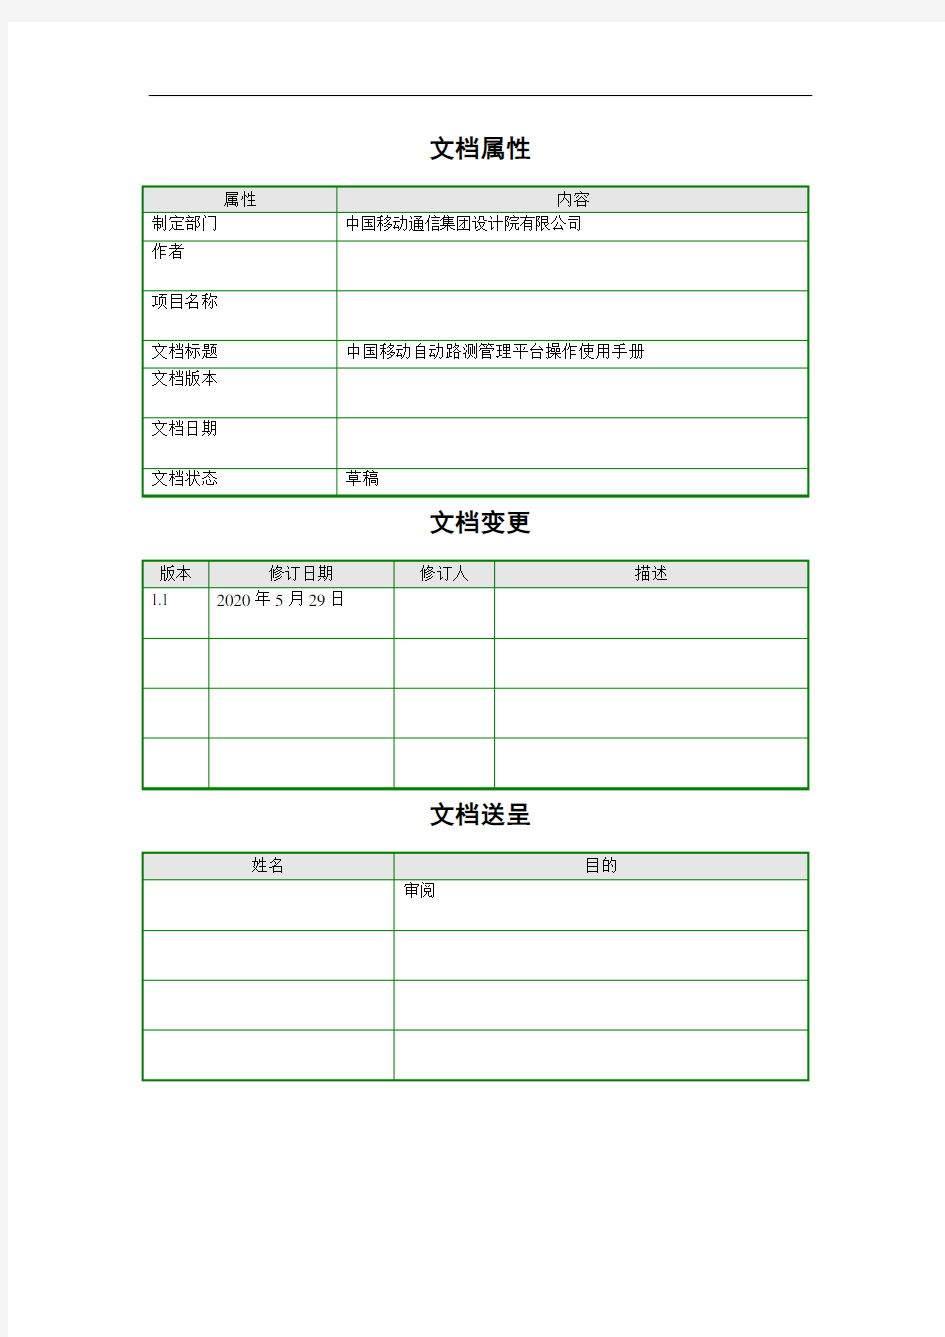 中国移动自动路测管理平台操作使用手册简易